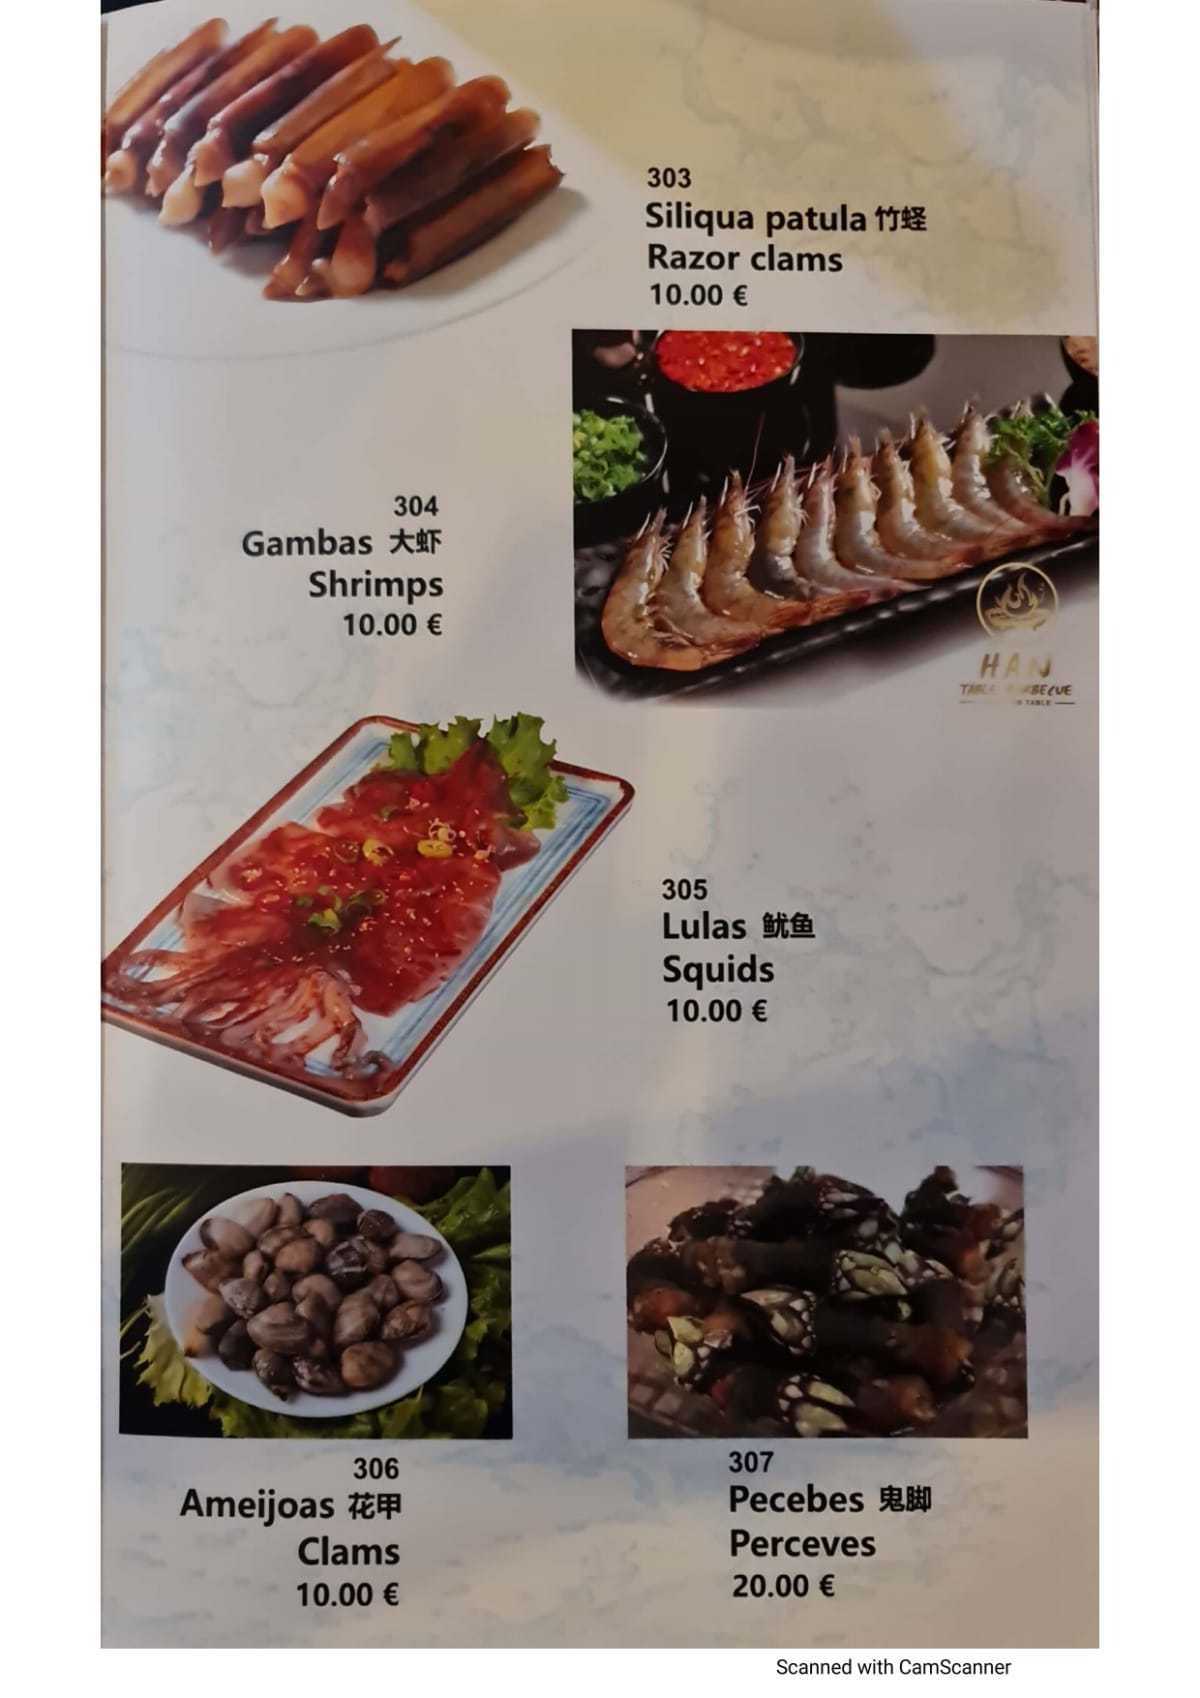 Han Table Barbecue - Arroios menu